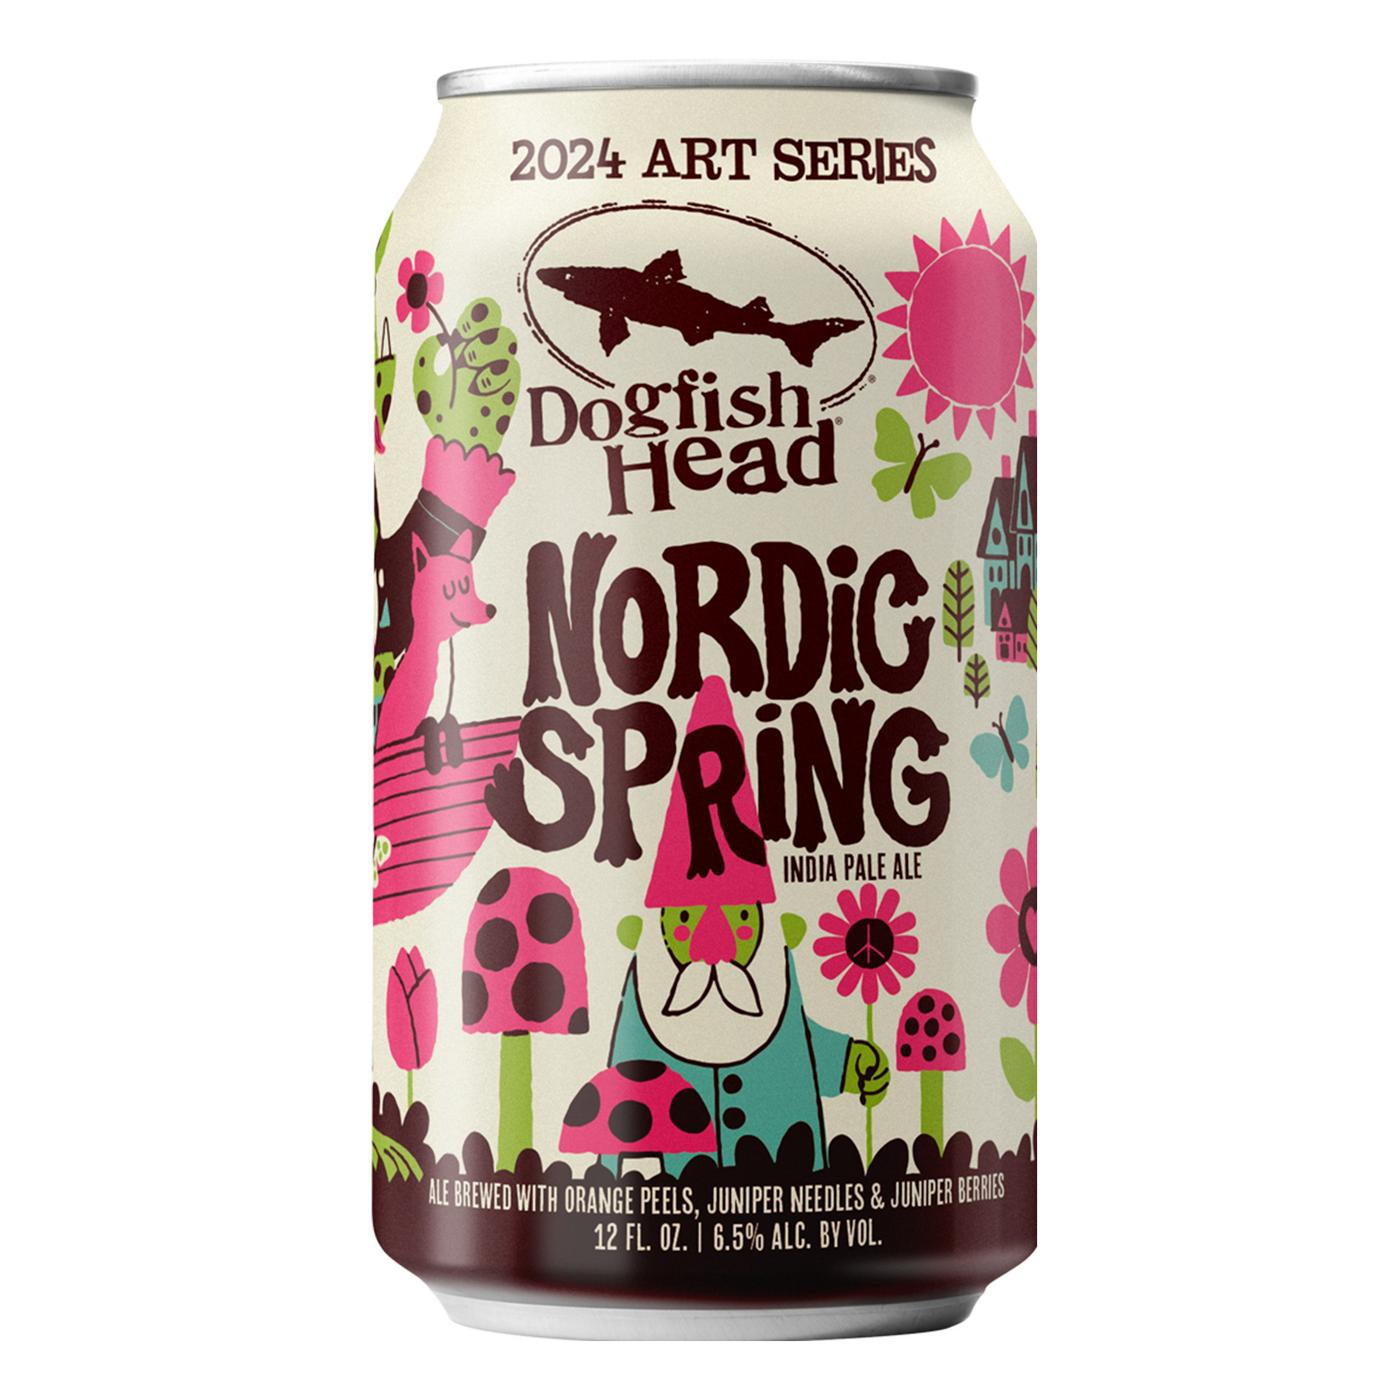 Dogfish Head Nordic Spring IPA Seasonal Art Series Beer; image 3 of 3